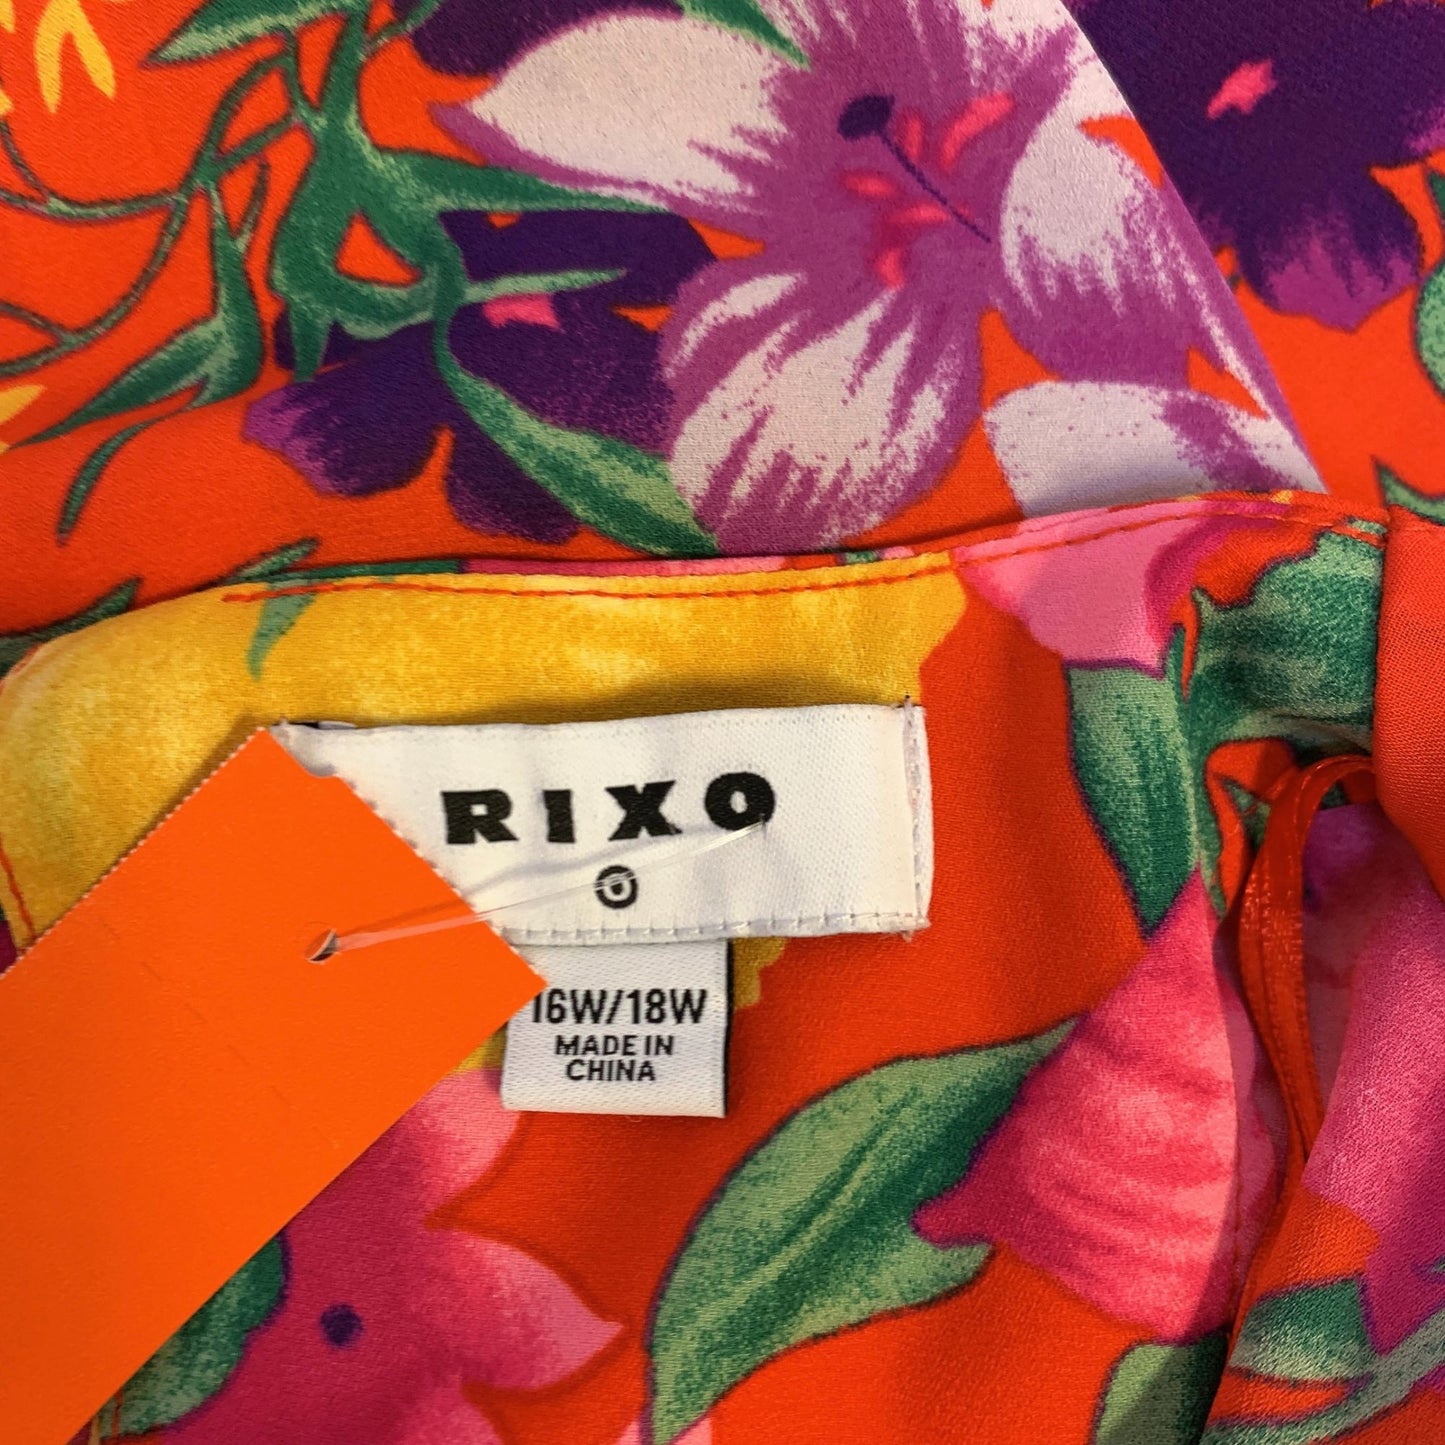 *Rixo Red & Yellow Floral Print Dress Size 16W/18W